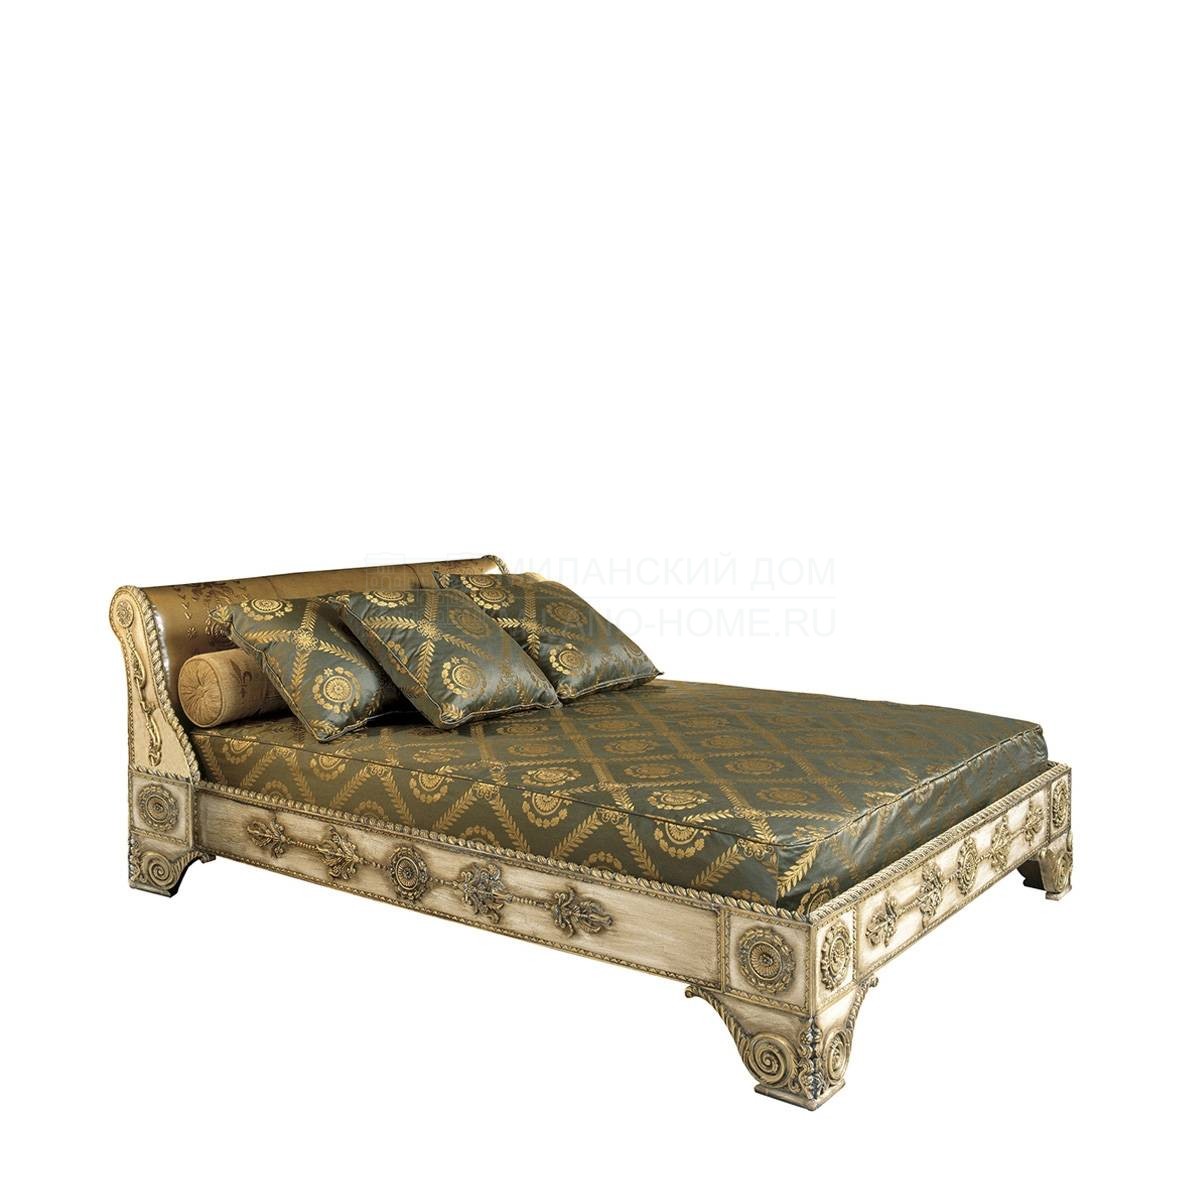 Кровать с деревянным изголовьем Torro /S3988/S3985 /S3989/S3994 из Испании фабрики COLECCION ALEXANDRA